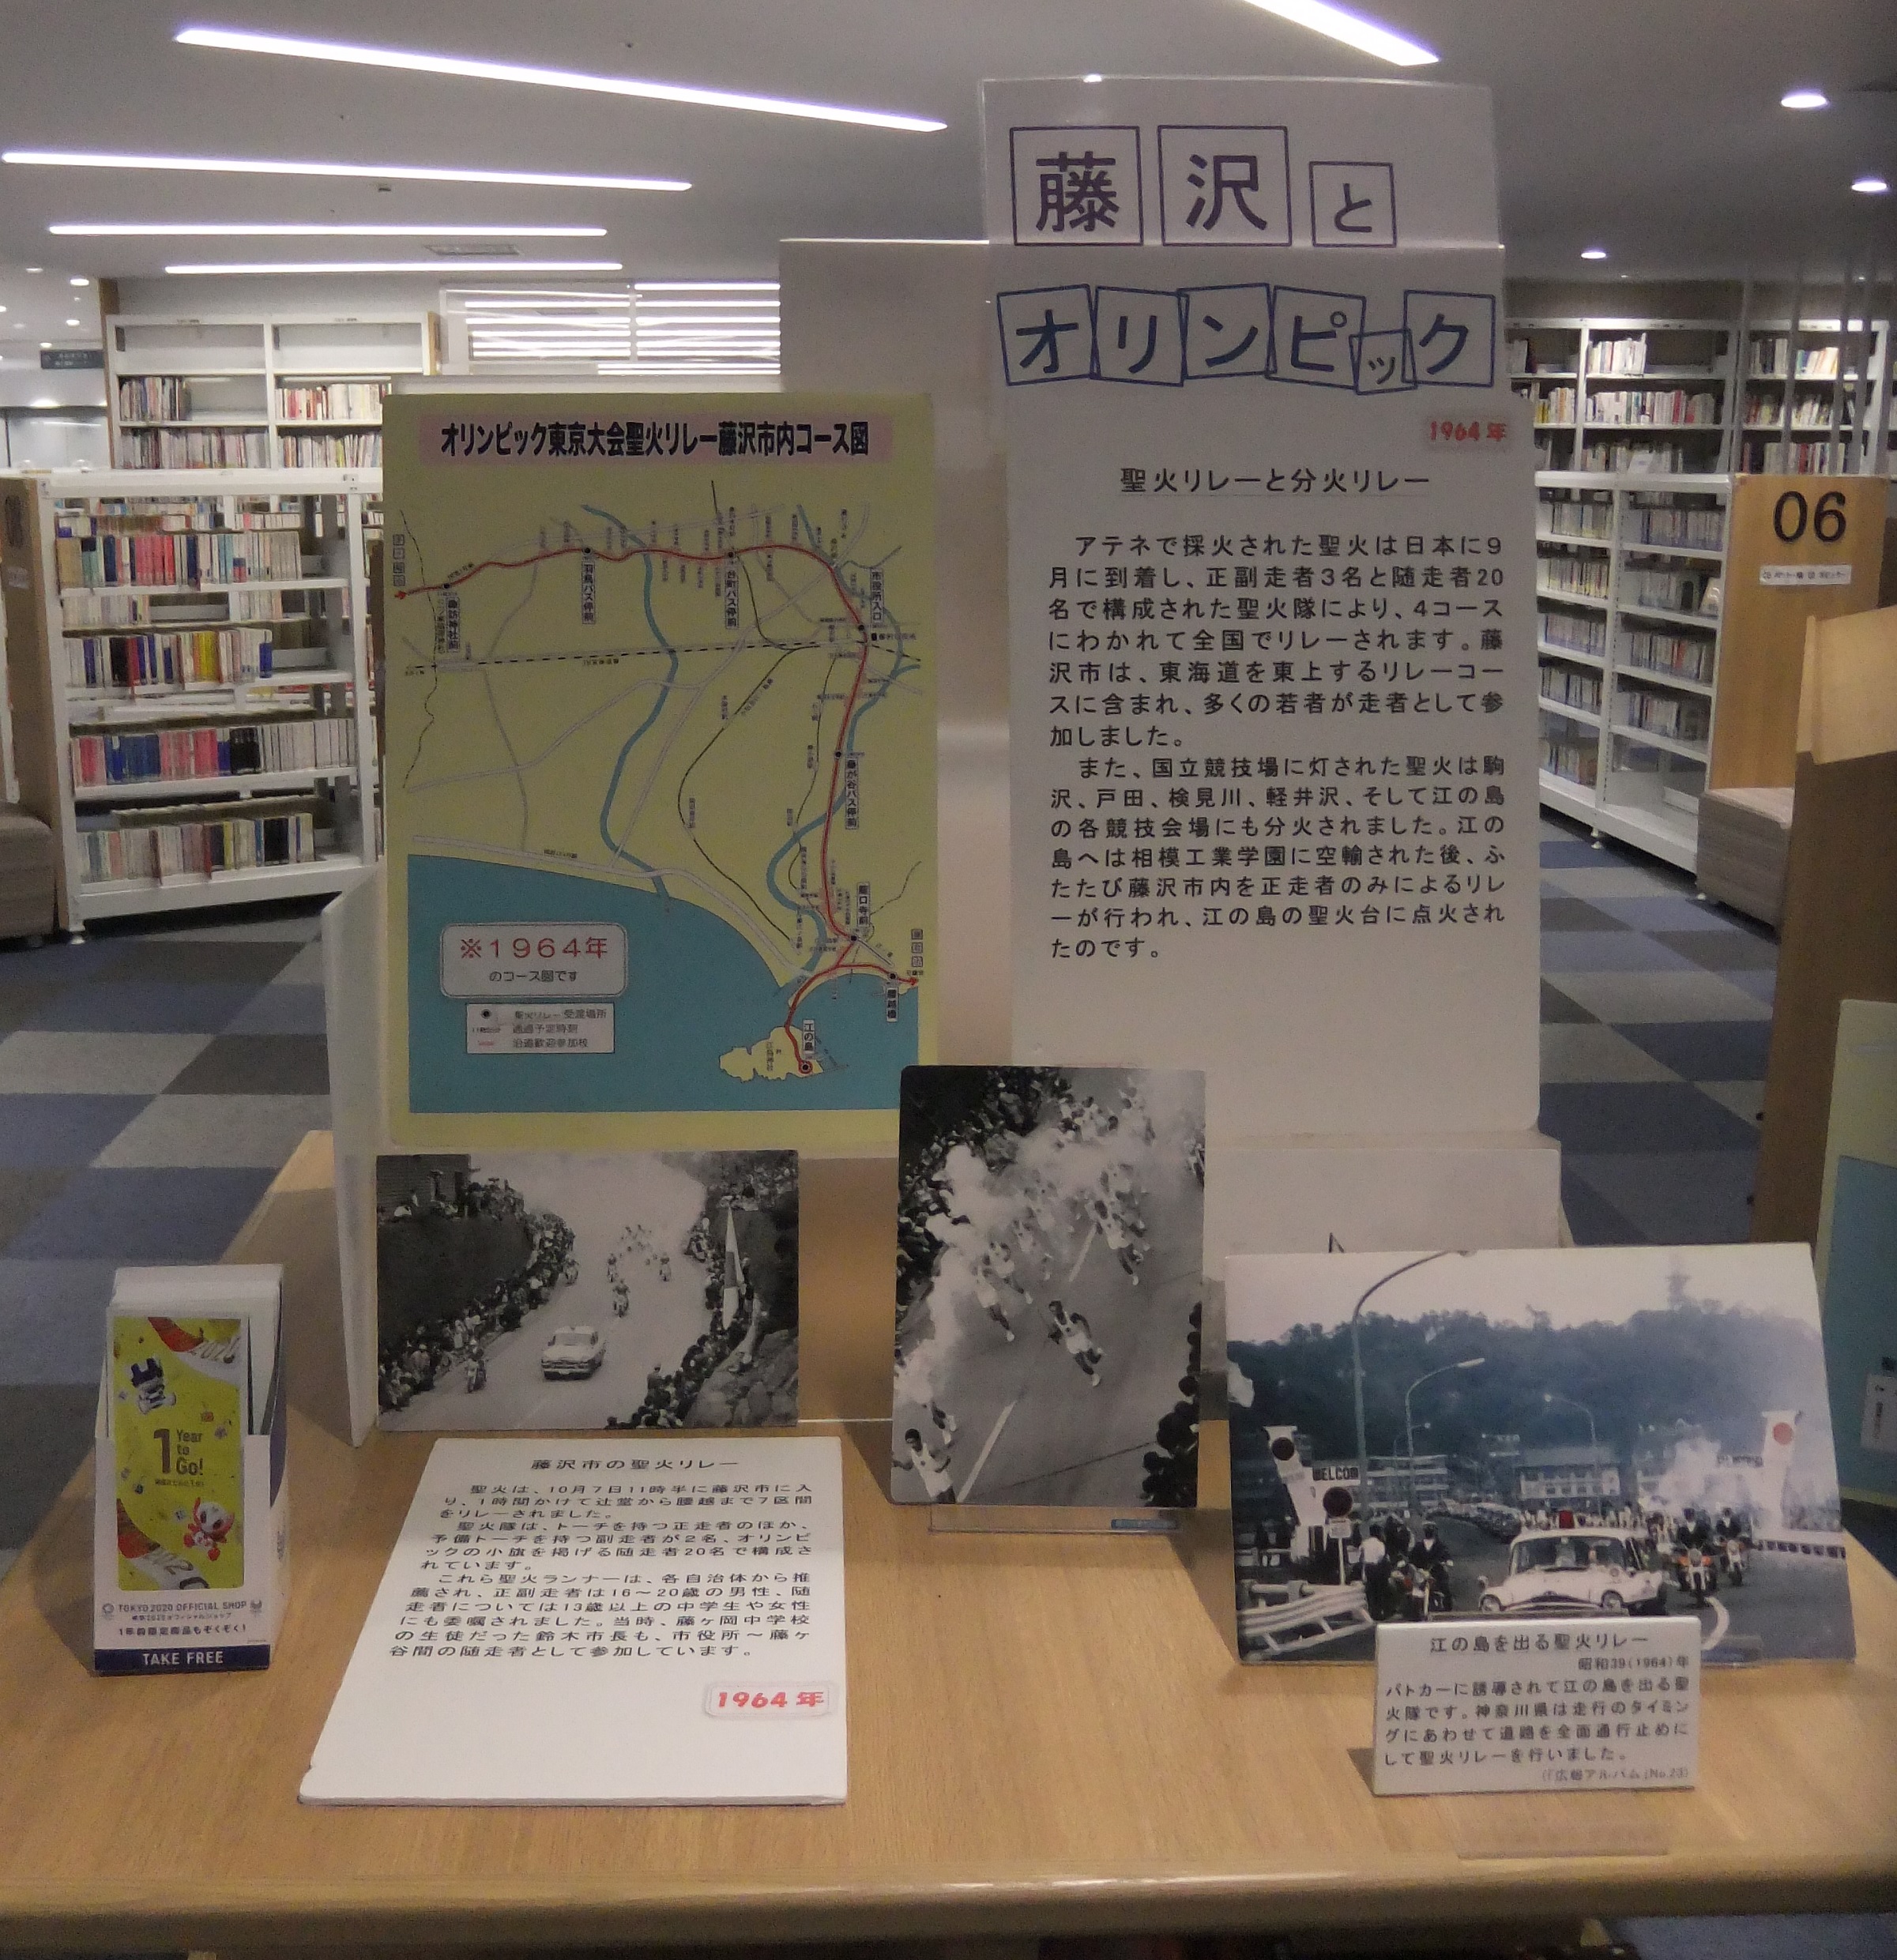 南市民図書館特別展示企画「藤沢とオリンピック-1964-」